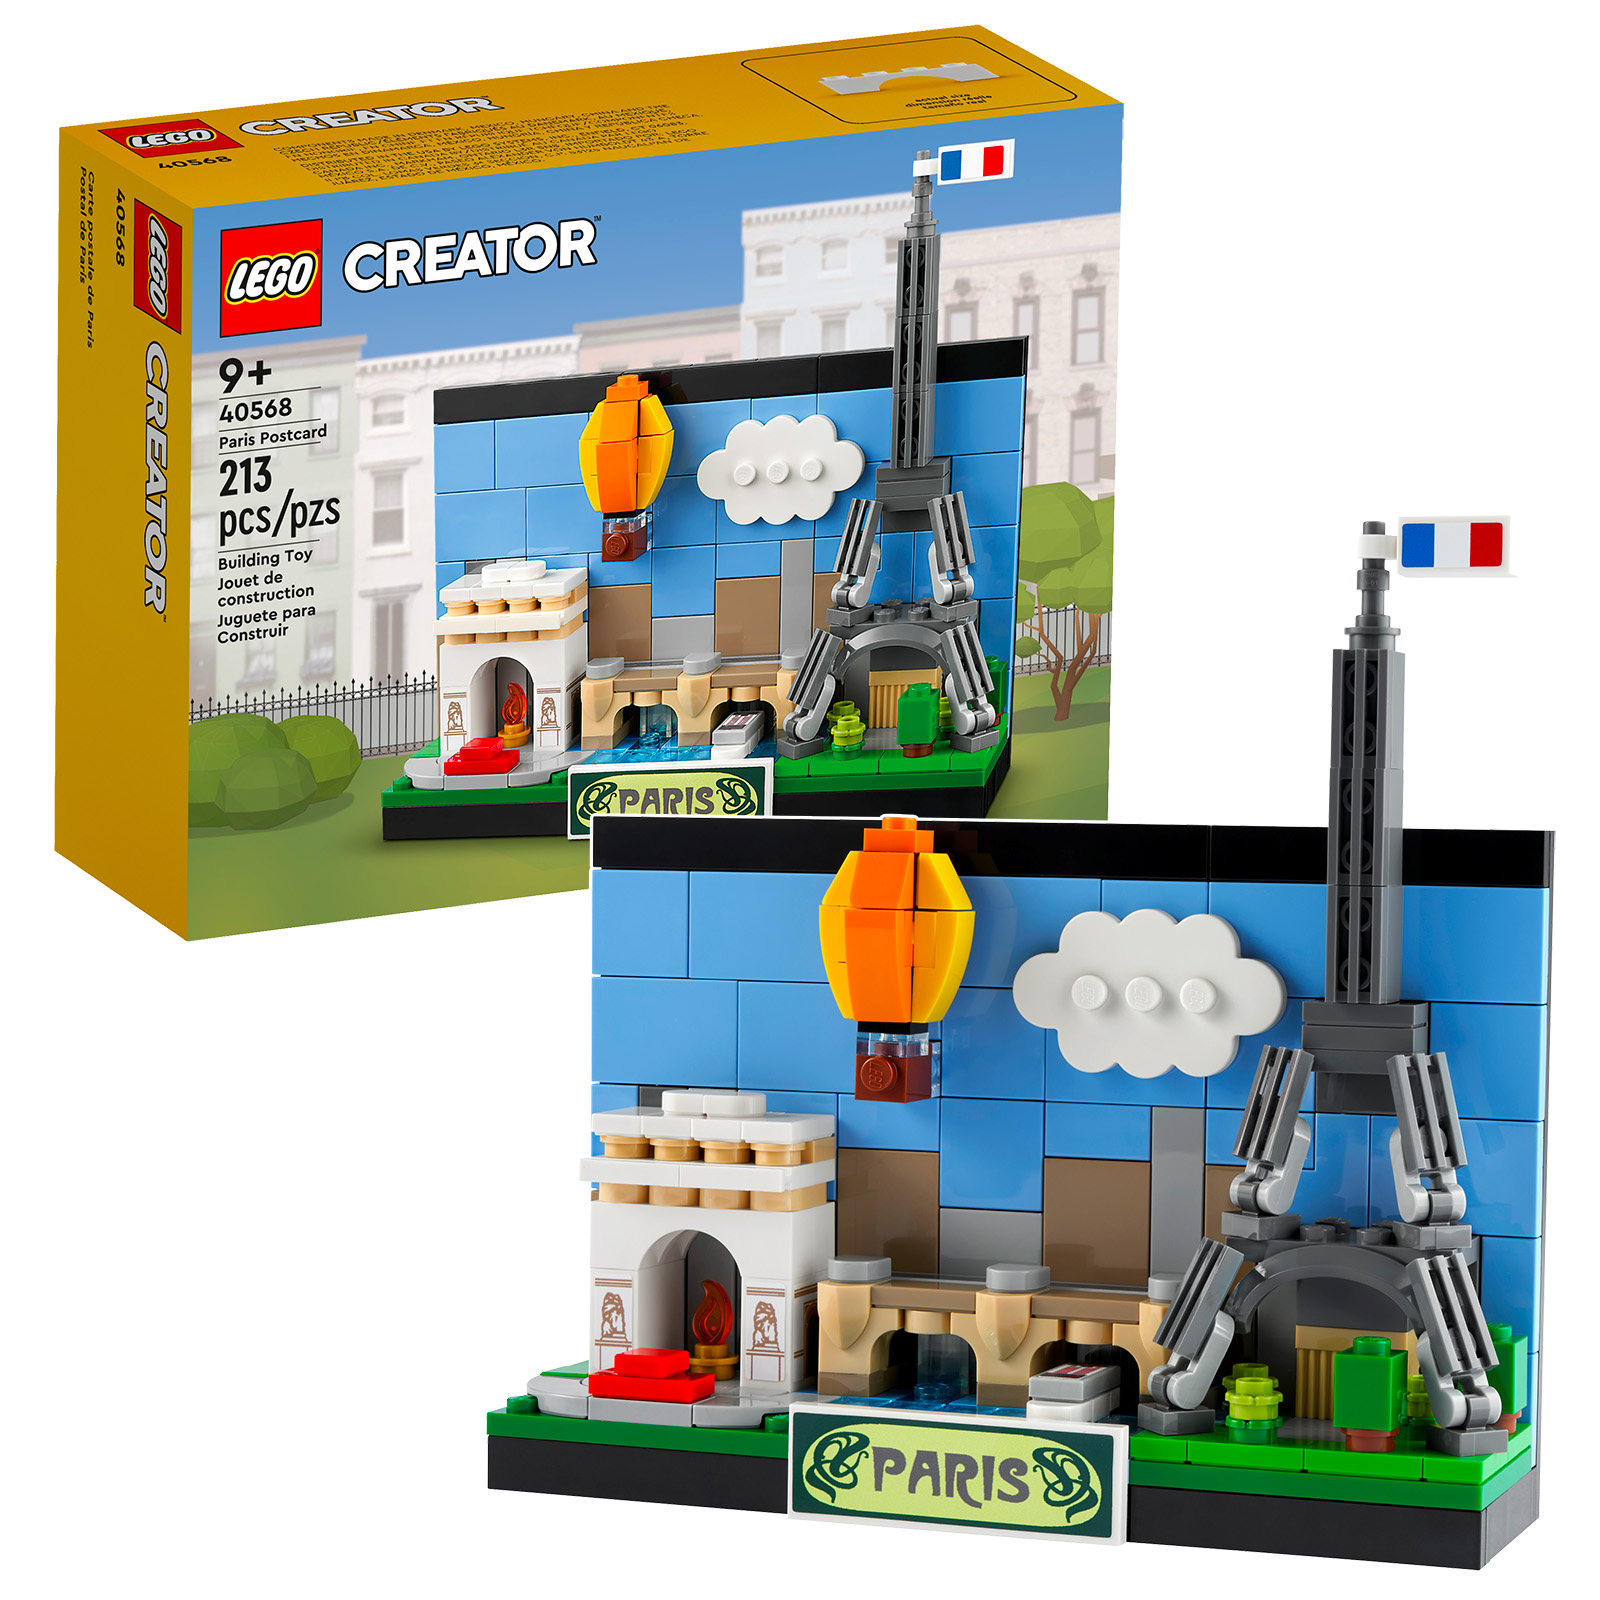 Nouveautés LEGO Creator 2022 : 40568 Paris Postcard & 40569 London Postcard